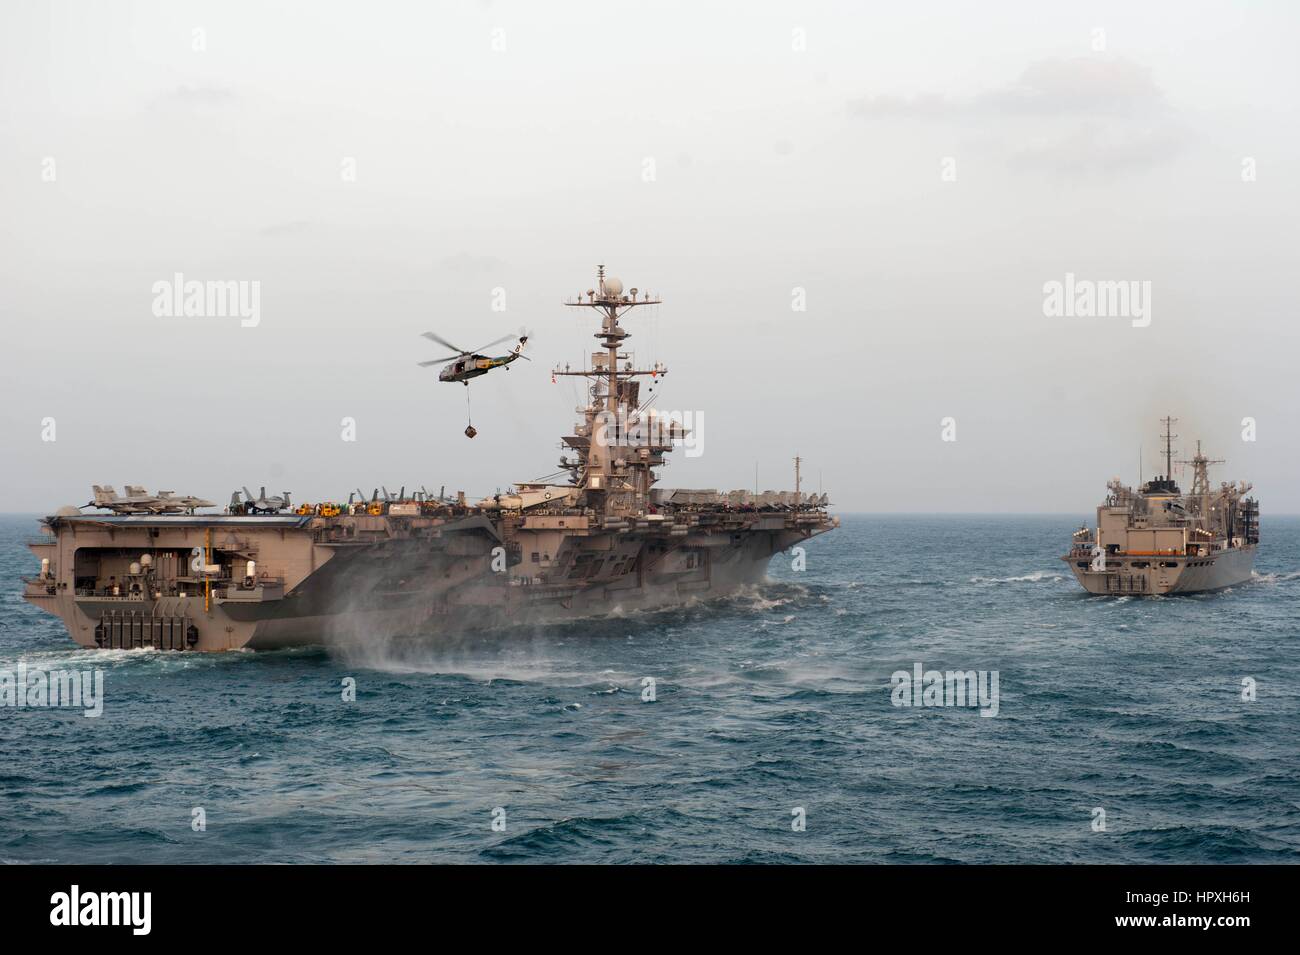 El USS John C. Stennis se repone en el mar por un helicóptero asignado al mar de helicópteros Eightballers escuadrón de combate, 8 de enero de 2013. Imagen cortesía de la US Navy especialista en comunicación de 2ª clase de Armando Gonzales. Foto de stock